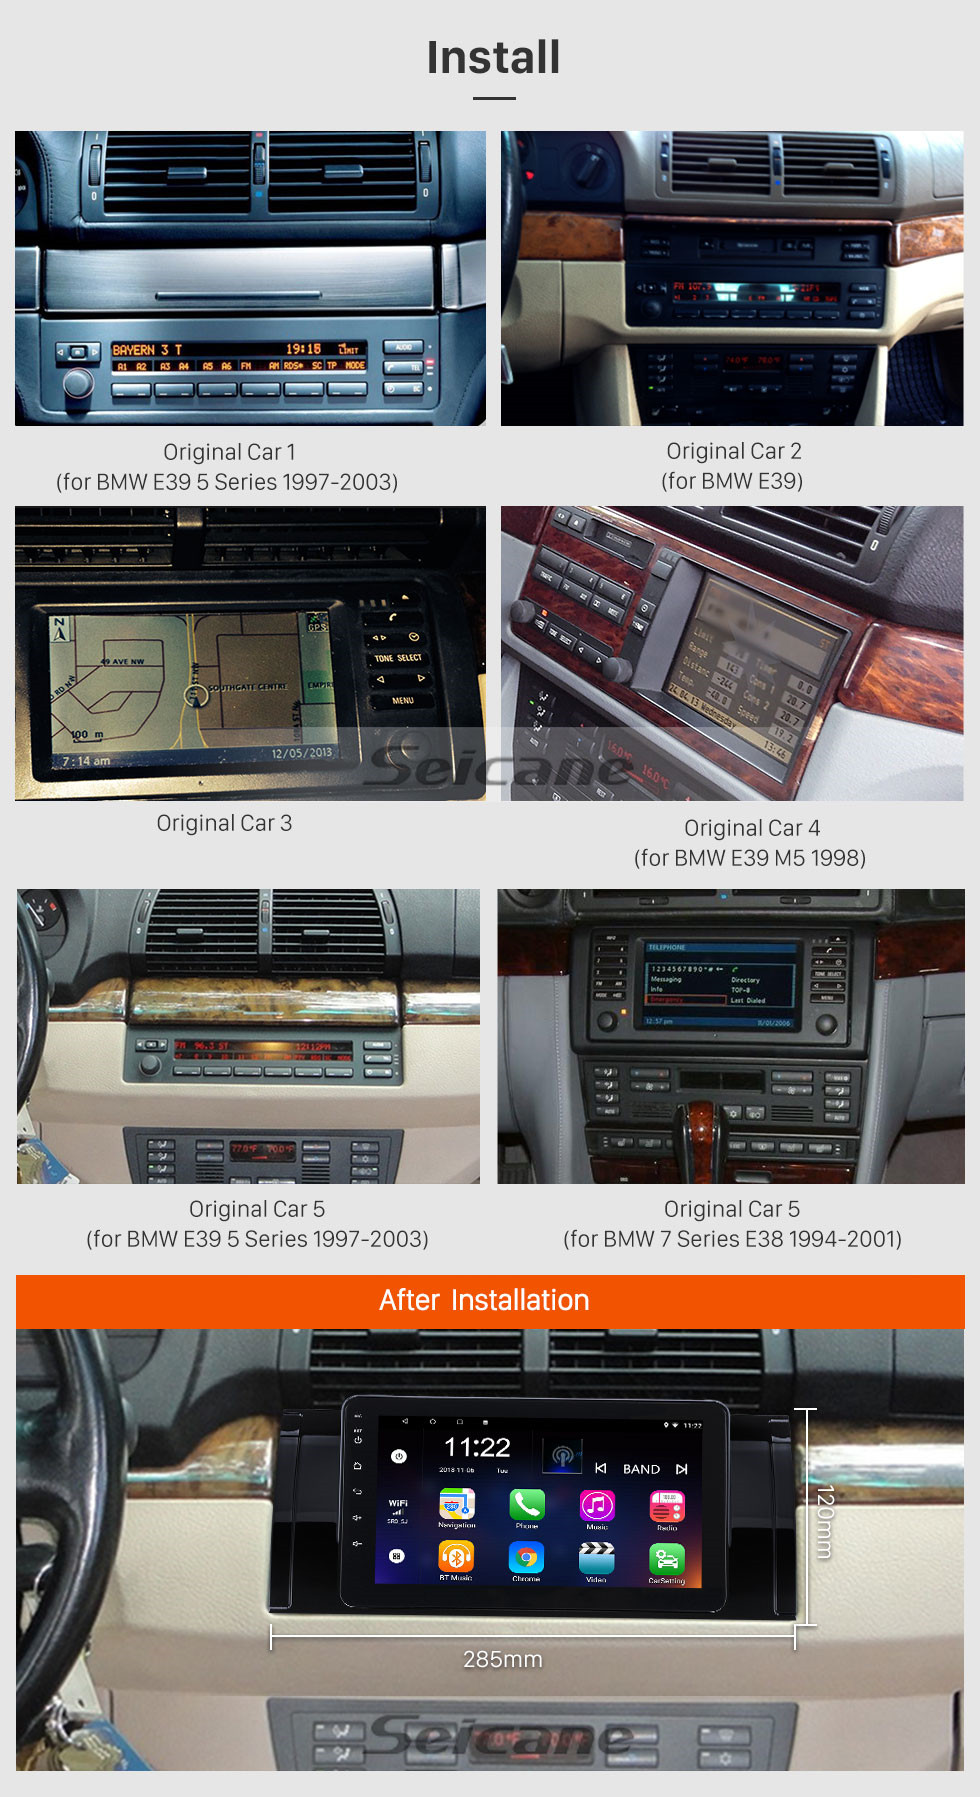 Caméra arrière & Canbus GRATUITES YUNTX Android 10 Autoradio Compatible avec BMW M5/E53/E39 1995-2003 Soutien Dab+/Bluetooth /4G/WiFi/USB/Commande au Volant/Mirrorlink/Carplay - GPS 2 Din